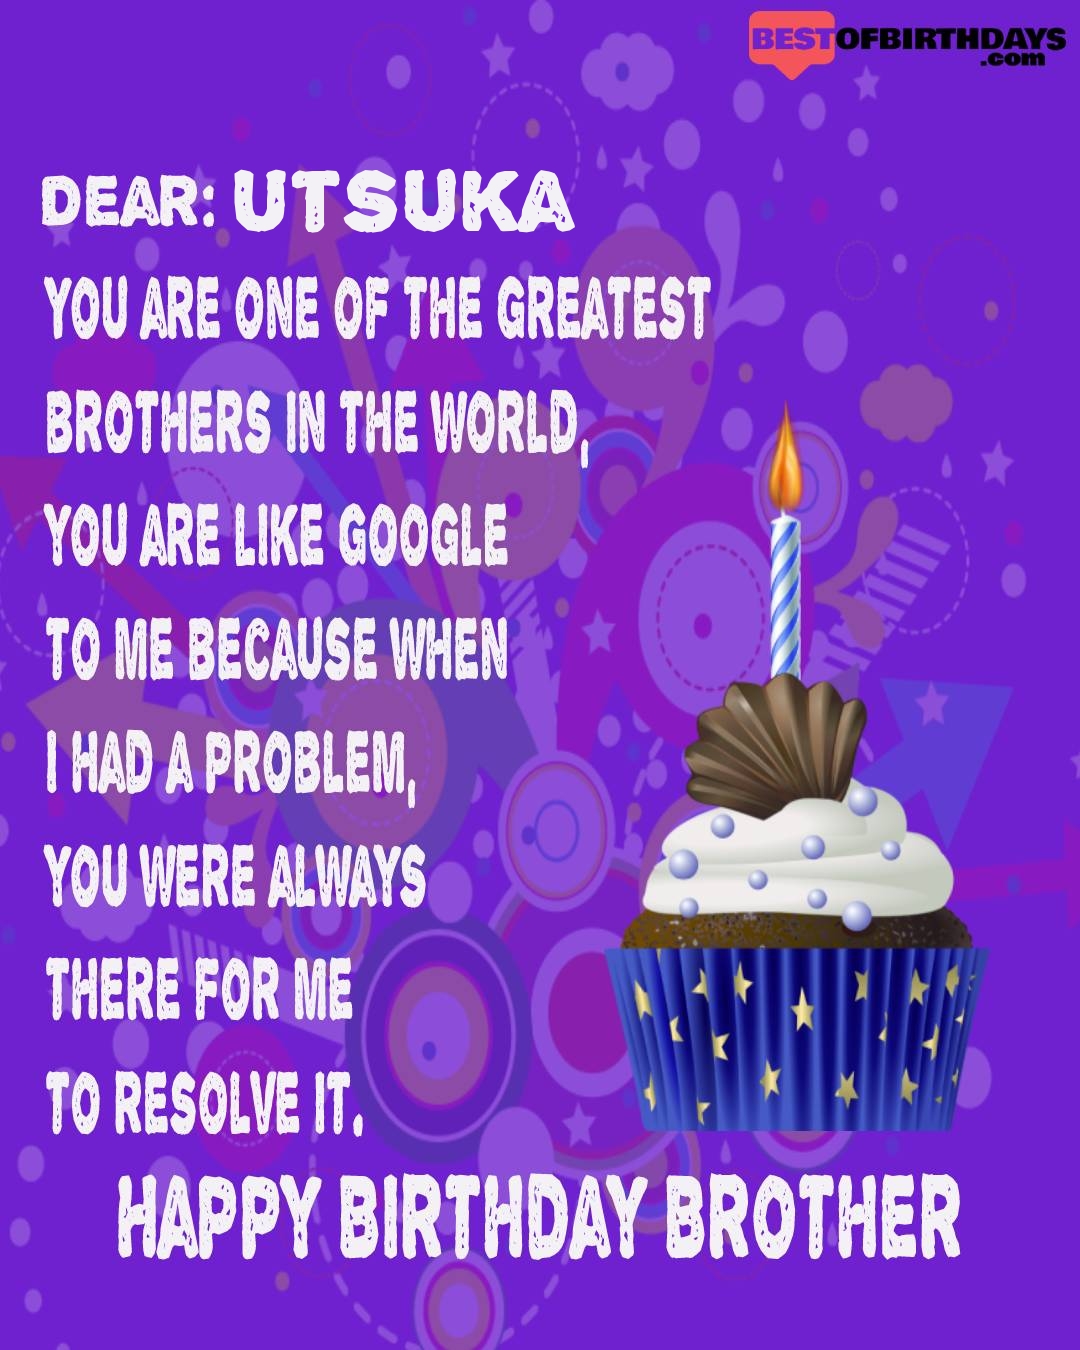 Happy birthday utsuka bhai brother bro